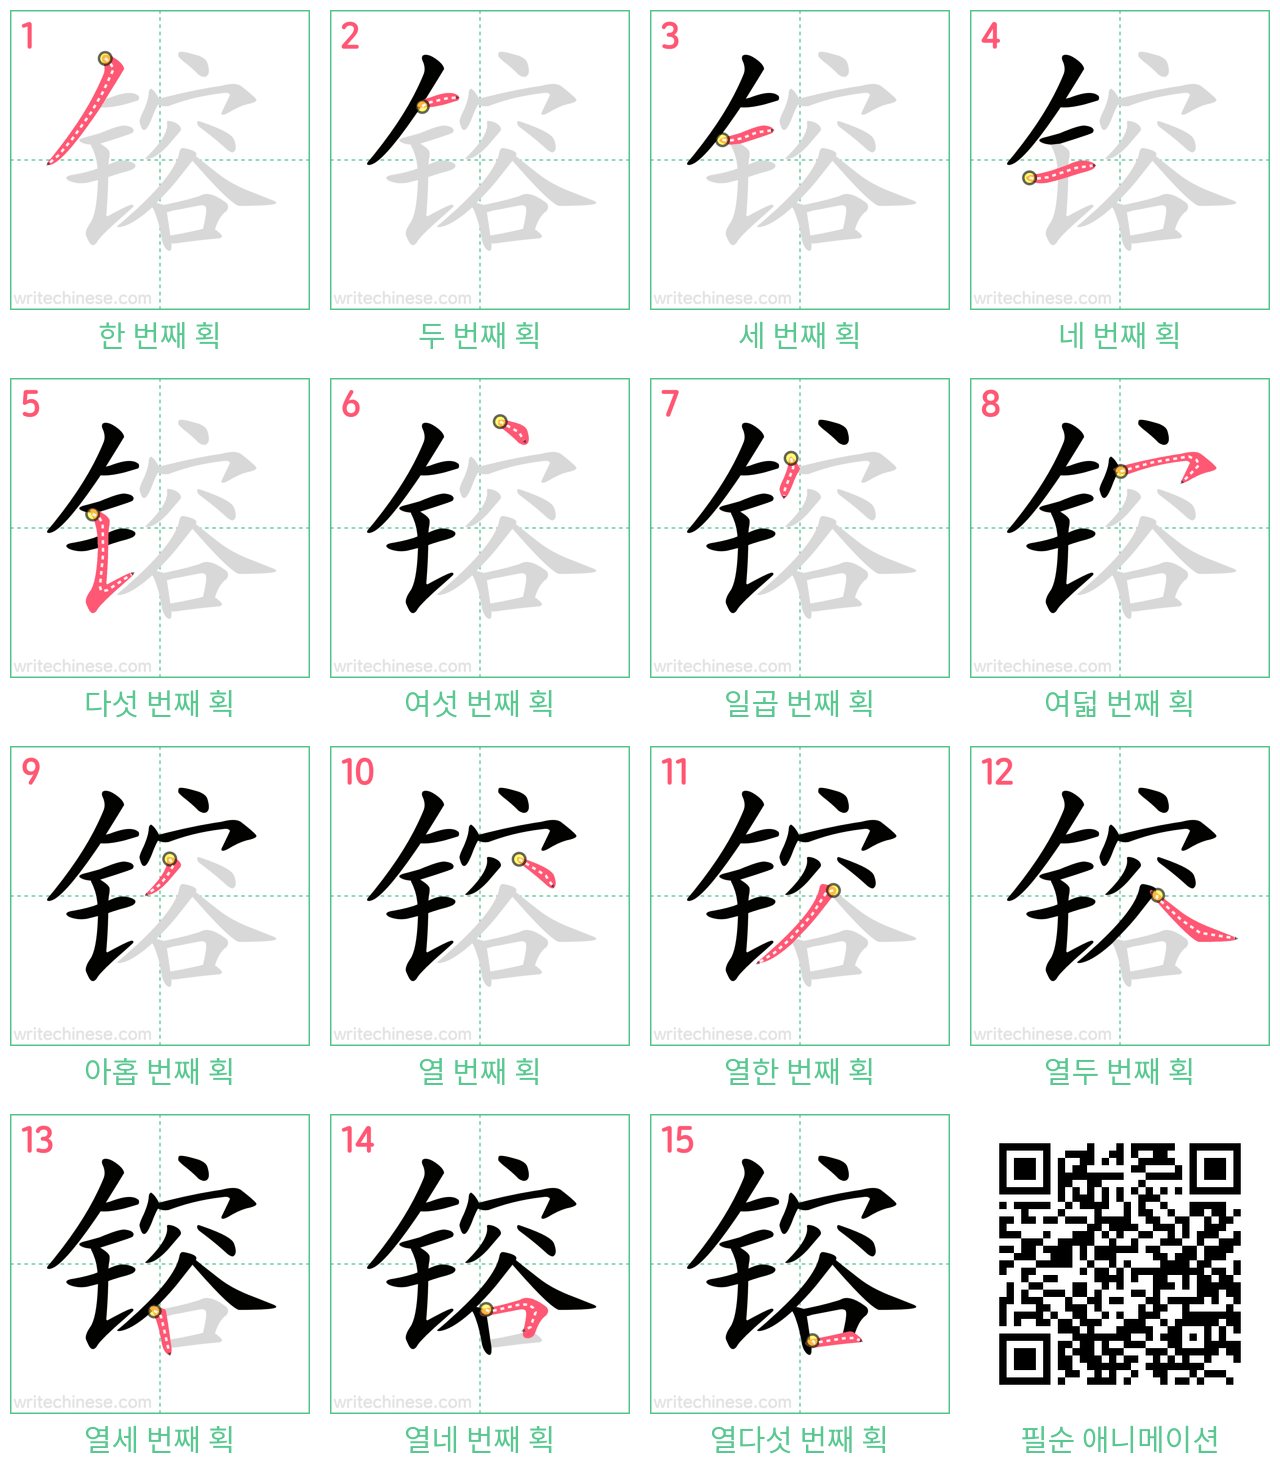 镕 step-by-step stroke order diagrams